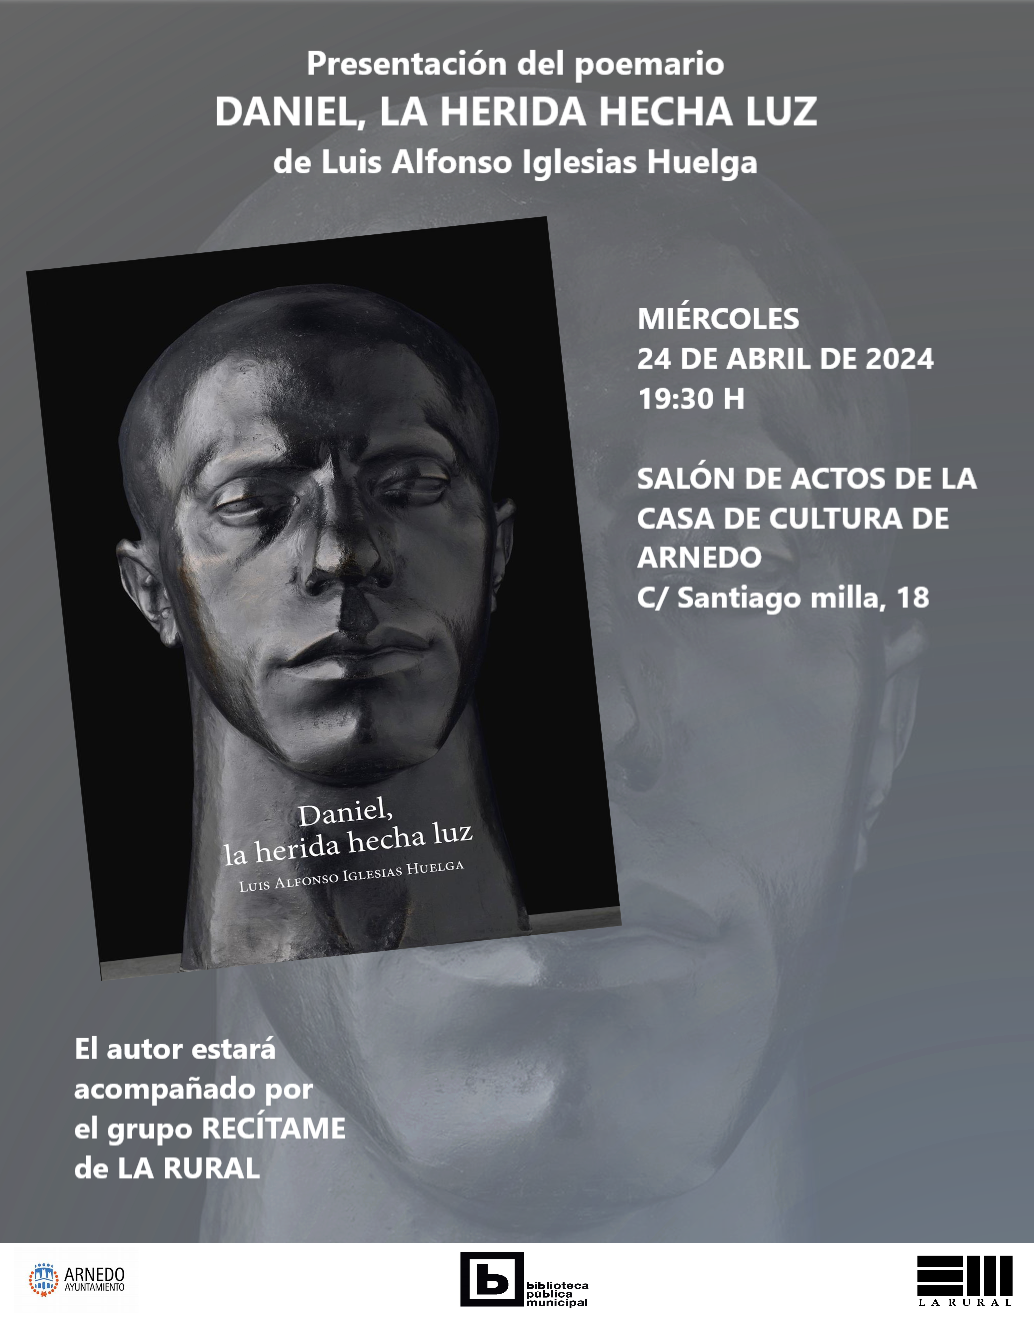 Presentación del poemario «Daniel, la herida hecha luz» por su autor Luis Alfonso Iglesias Huelga